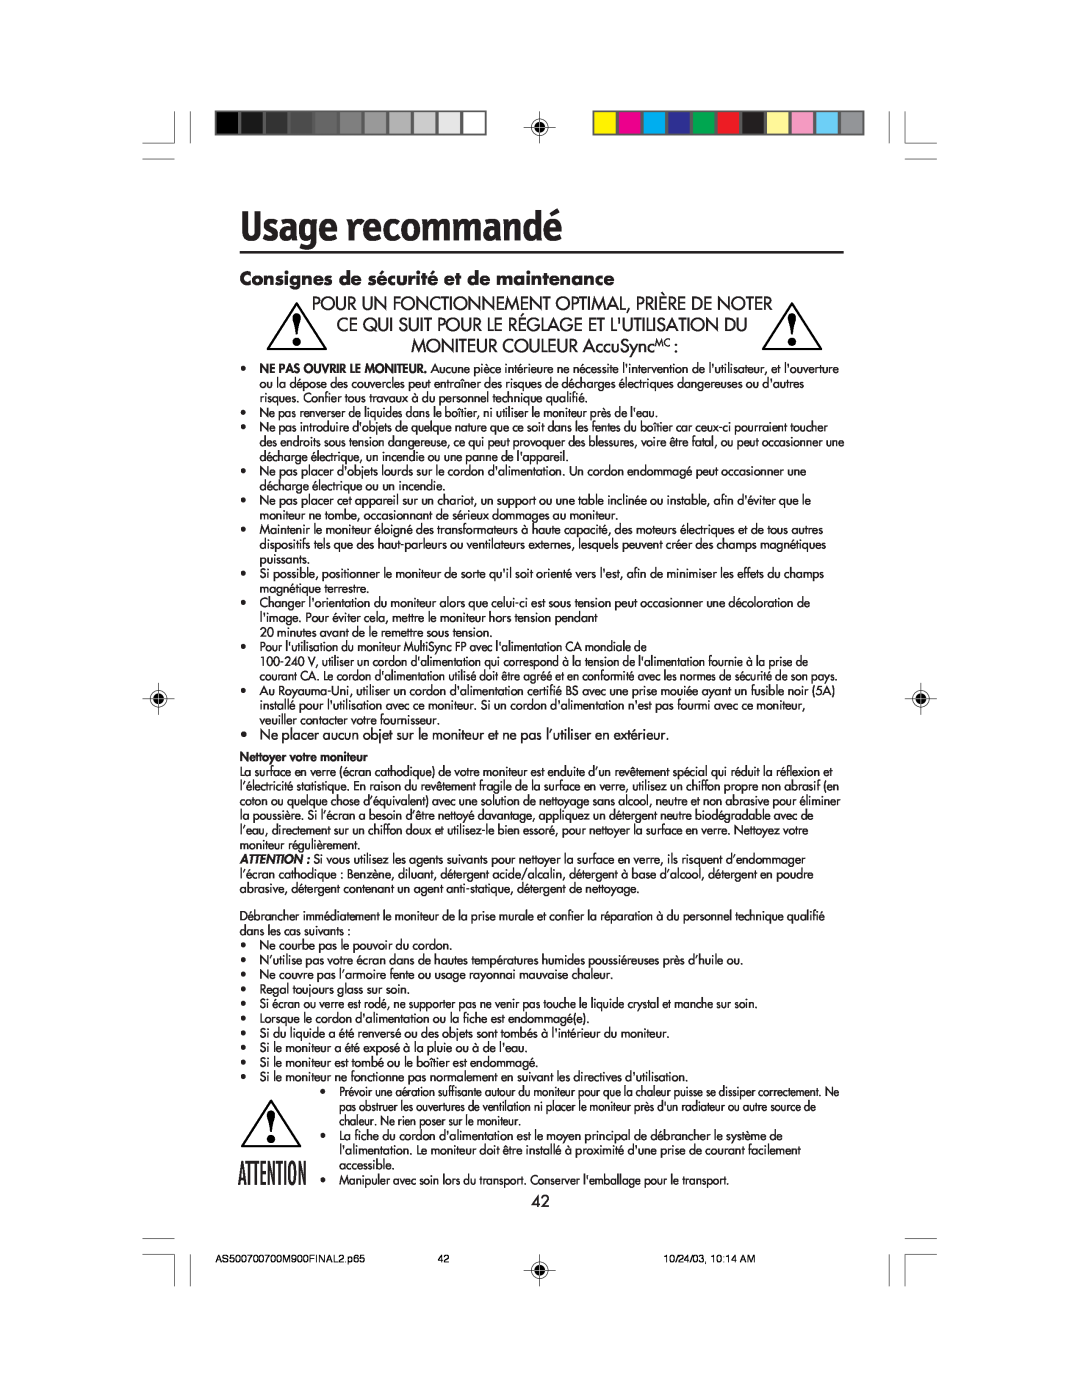 NEC 500, 900, 700 manual Usage recommandé, Consignes de sécurité et de maintenance 